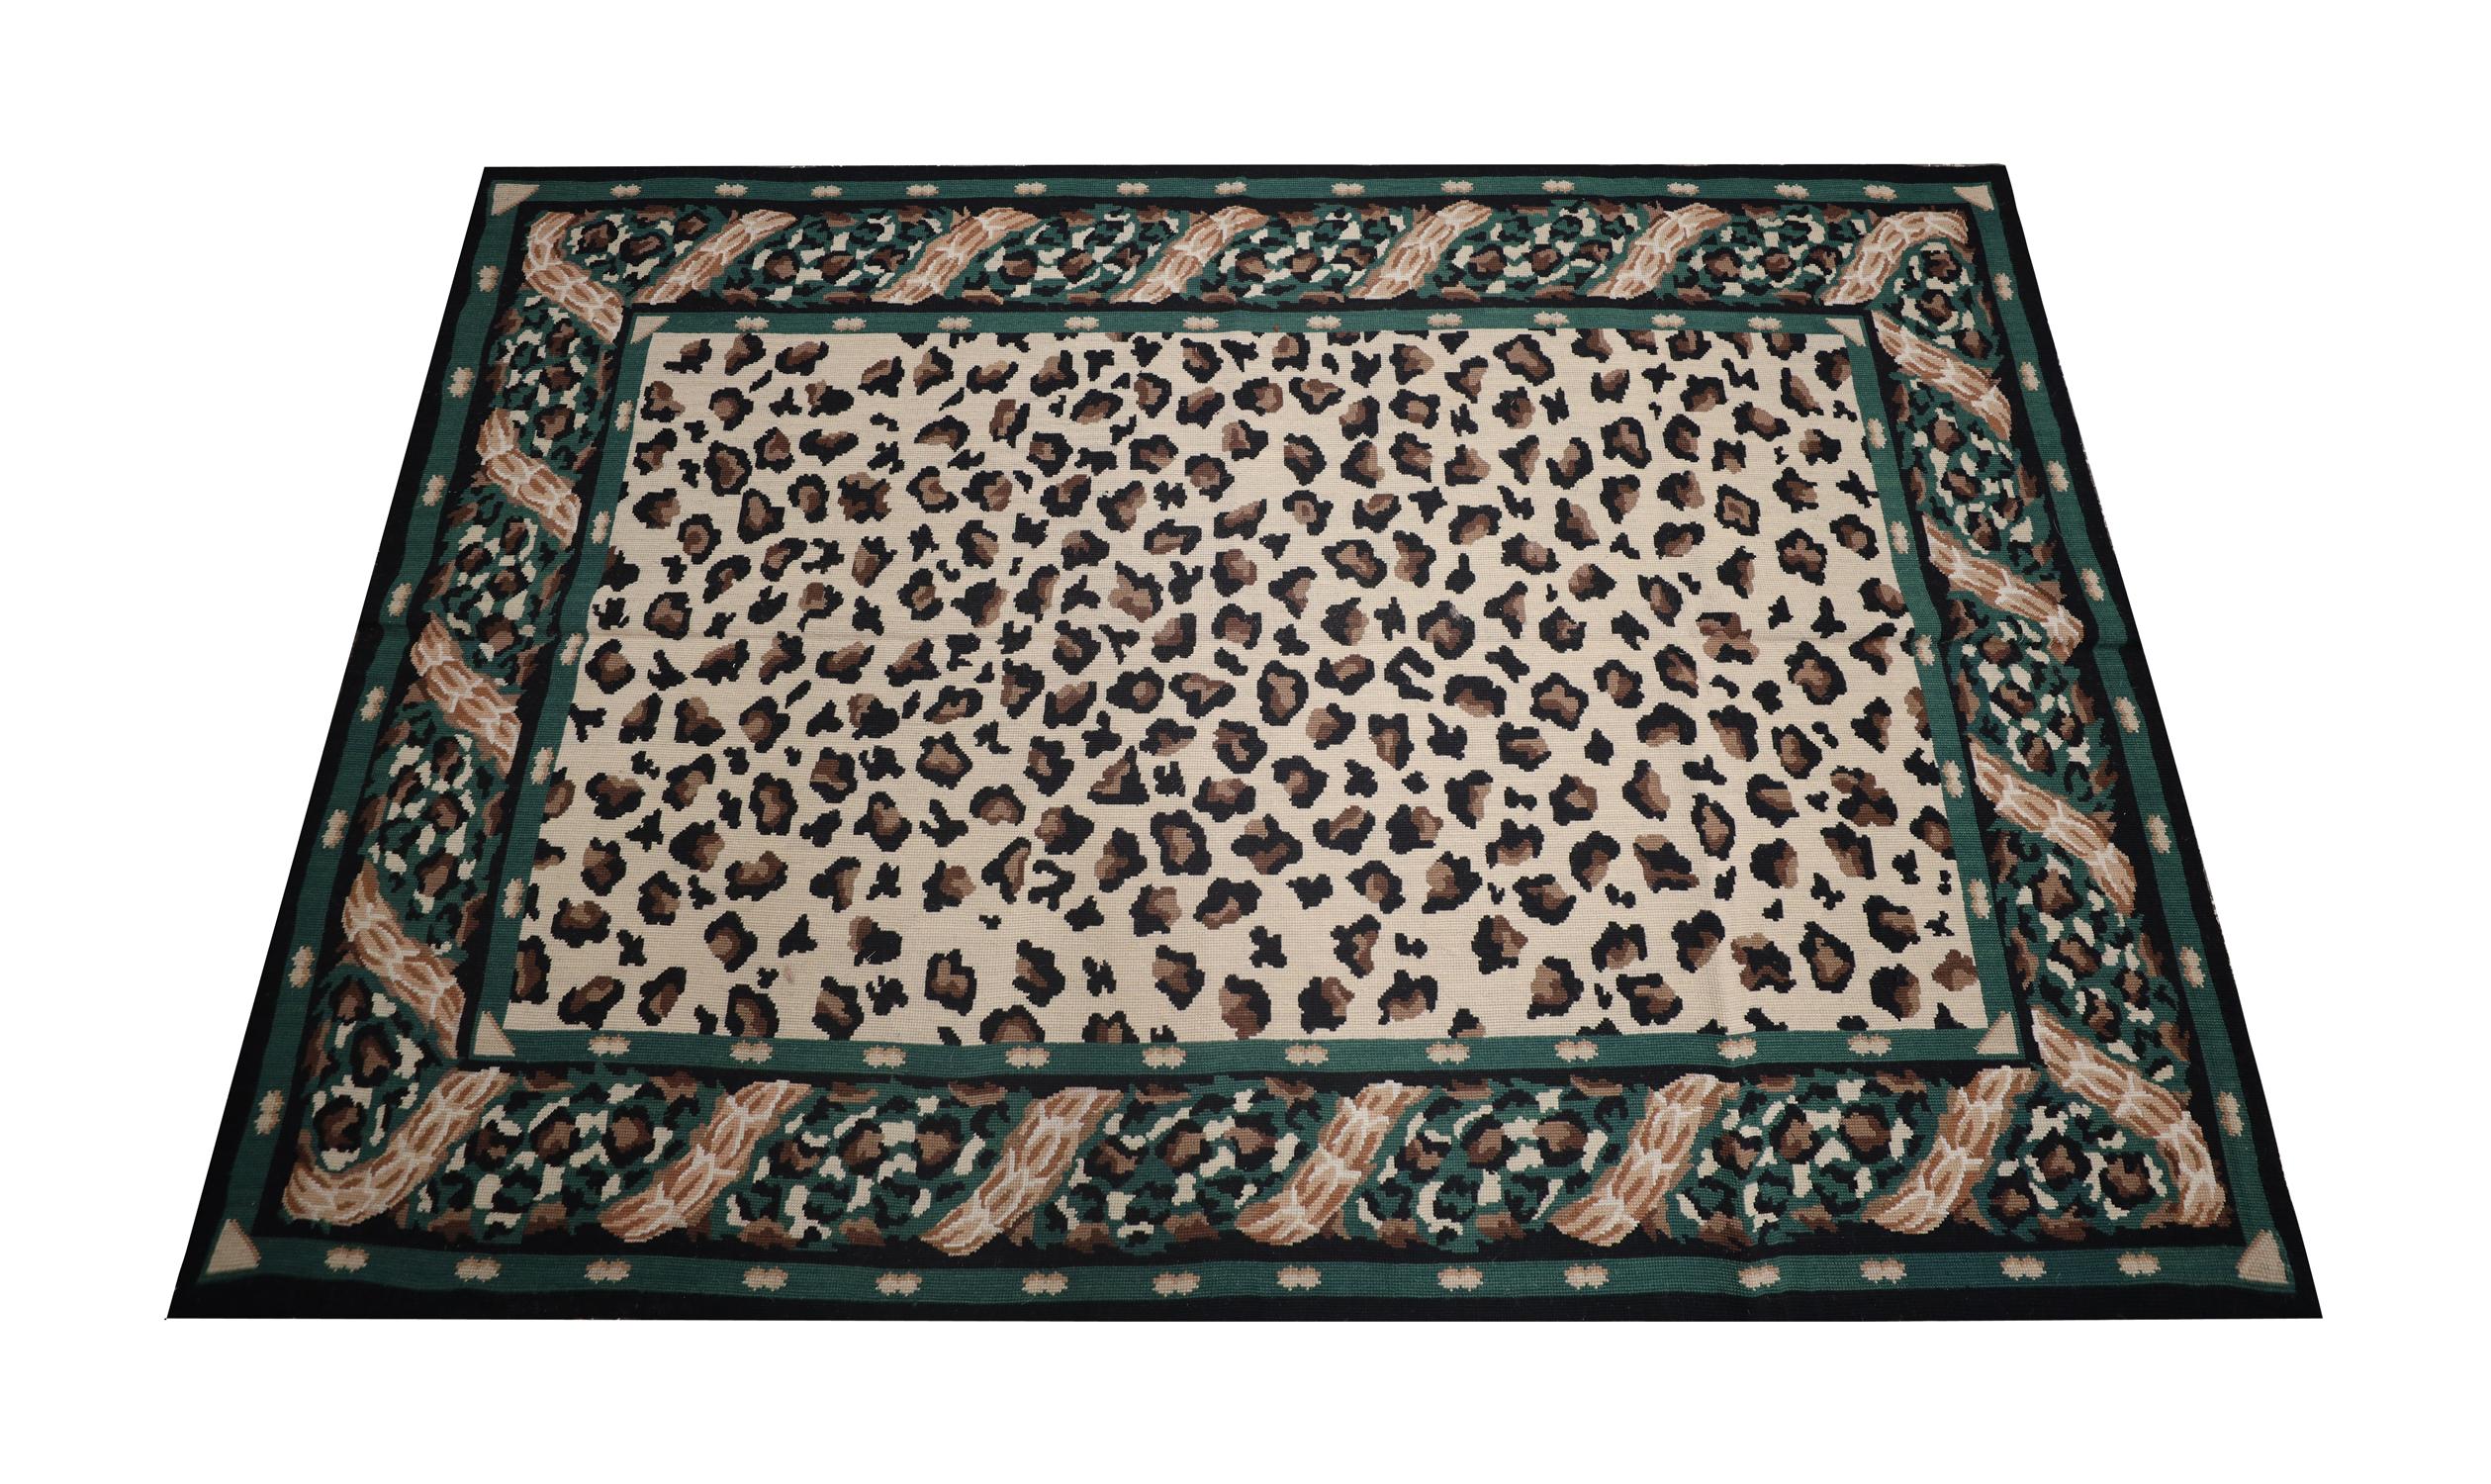 Ce tapis brodé de style moderne a été tissé avec une palette de couleurs contemporaines de vert, de brun et de beige qui composent le motif unique de l'imprimé léopard. Tissé à la main avec de la laine et du coton finement filés à la main, ce n'est